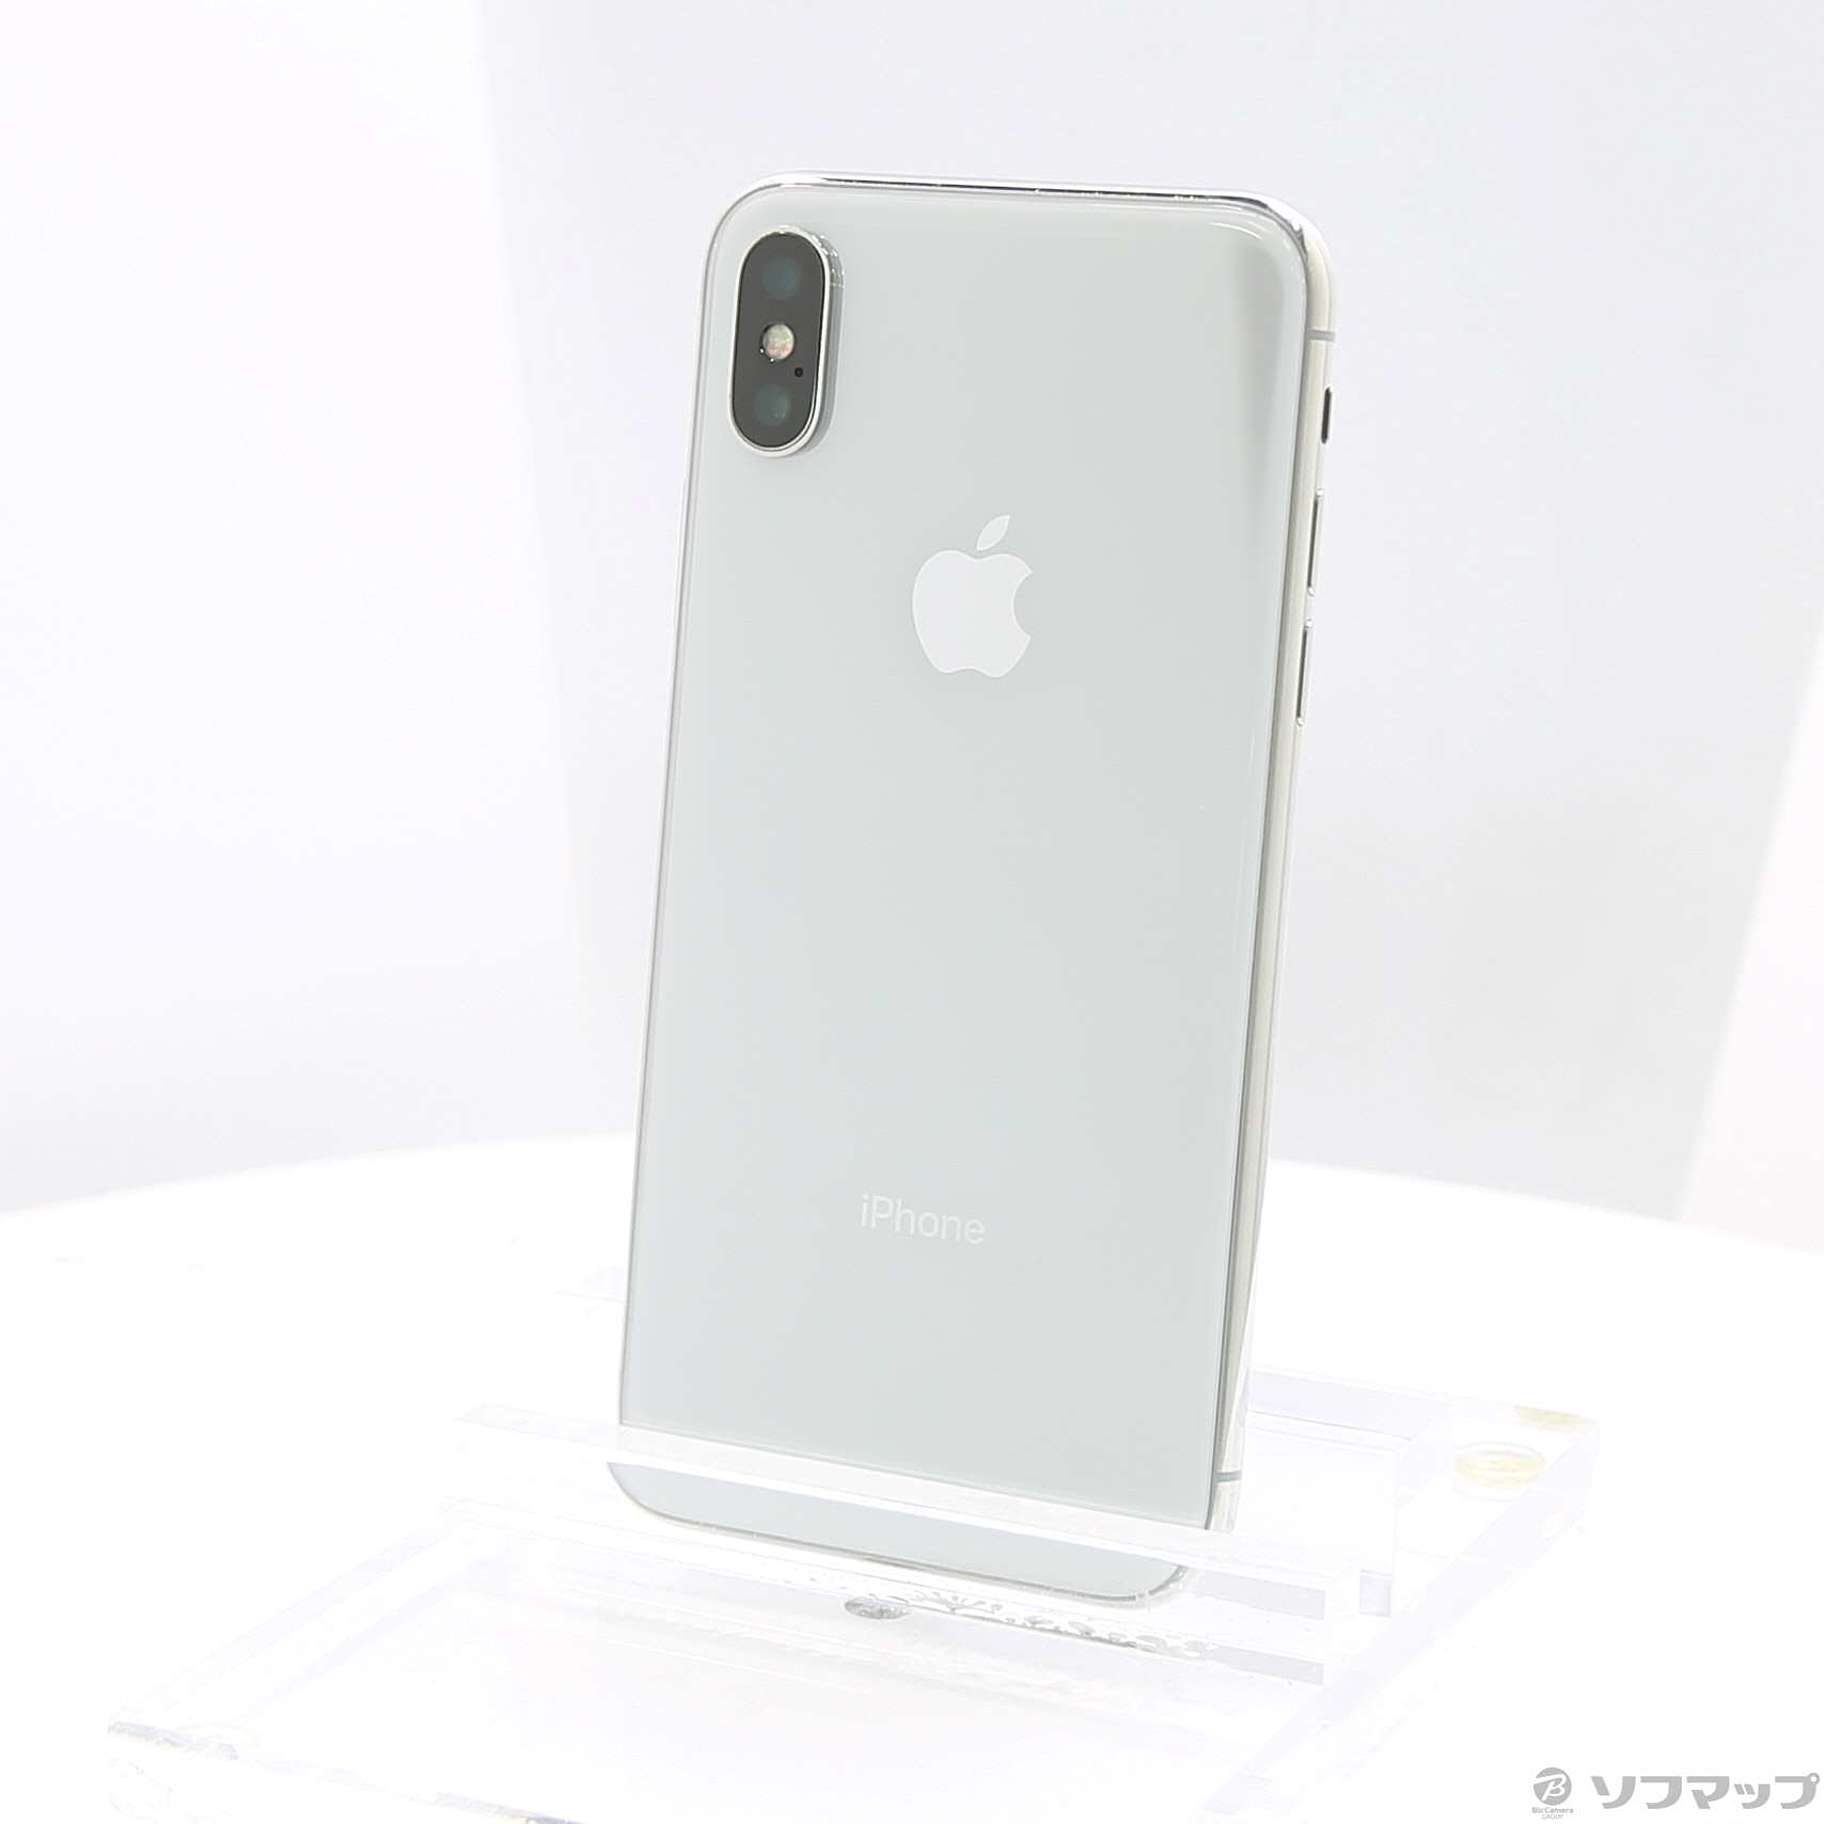 iPhone X silver 64GB simフリー